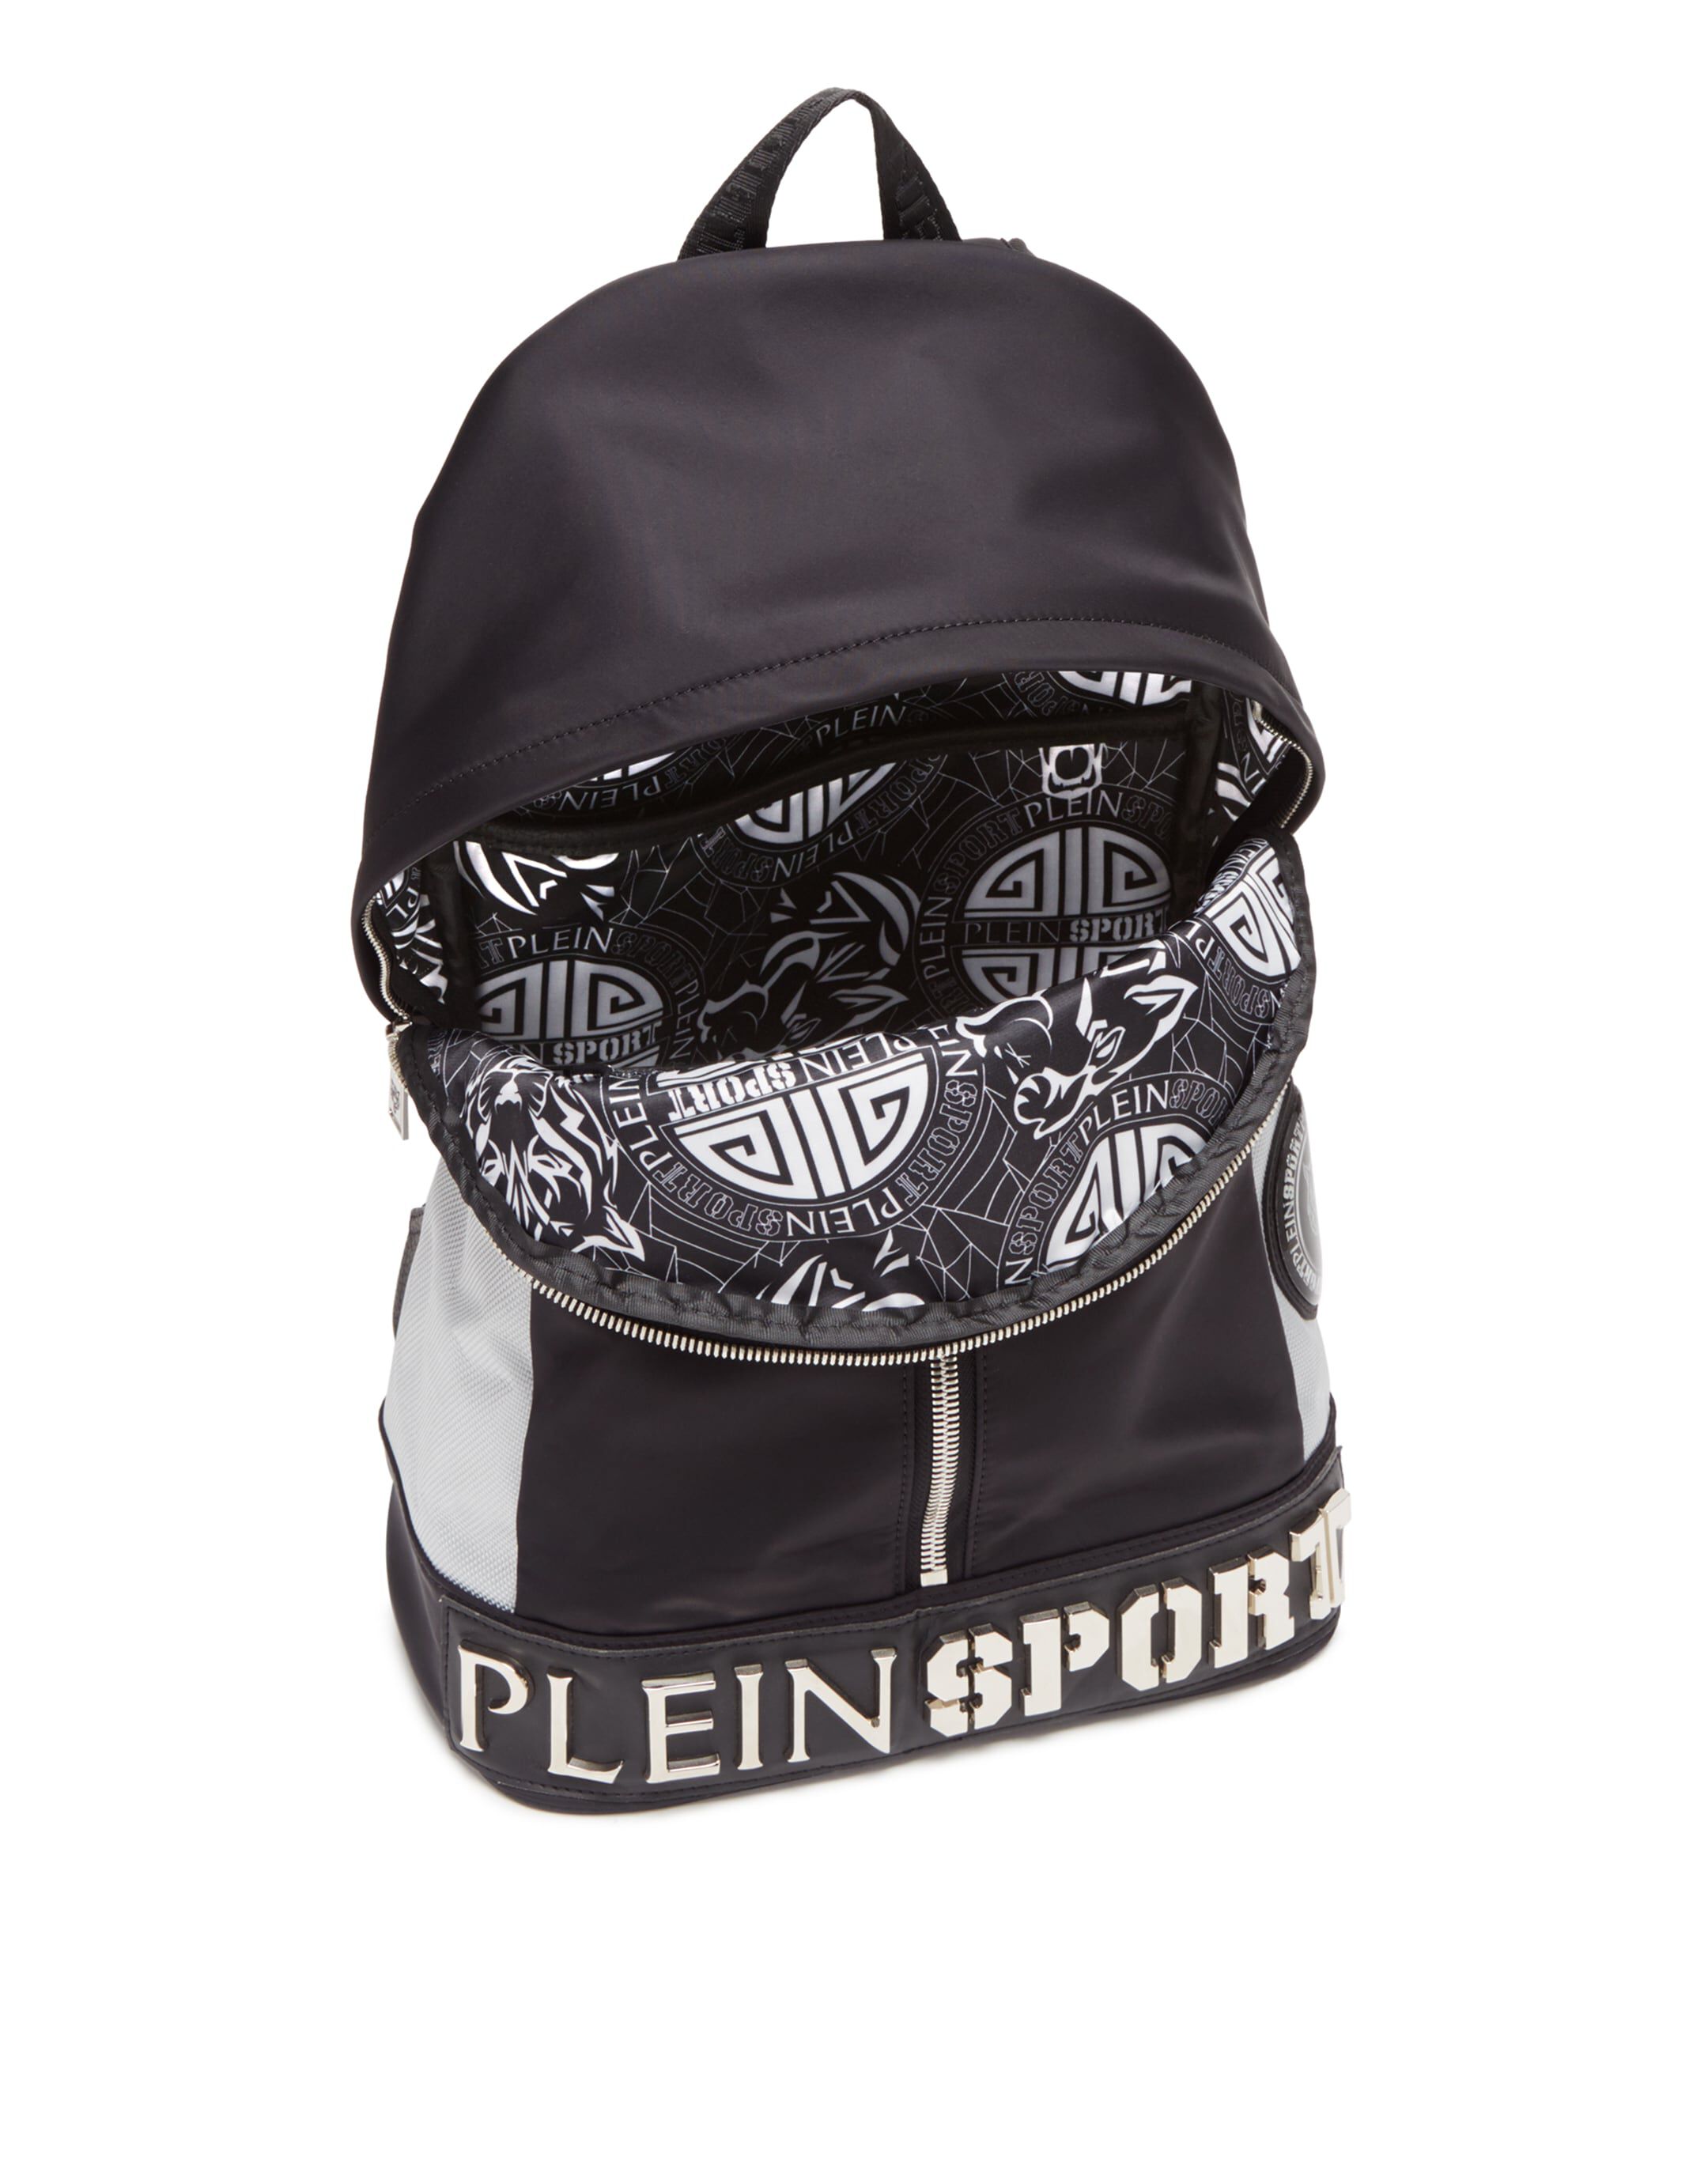 james sport backpack